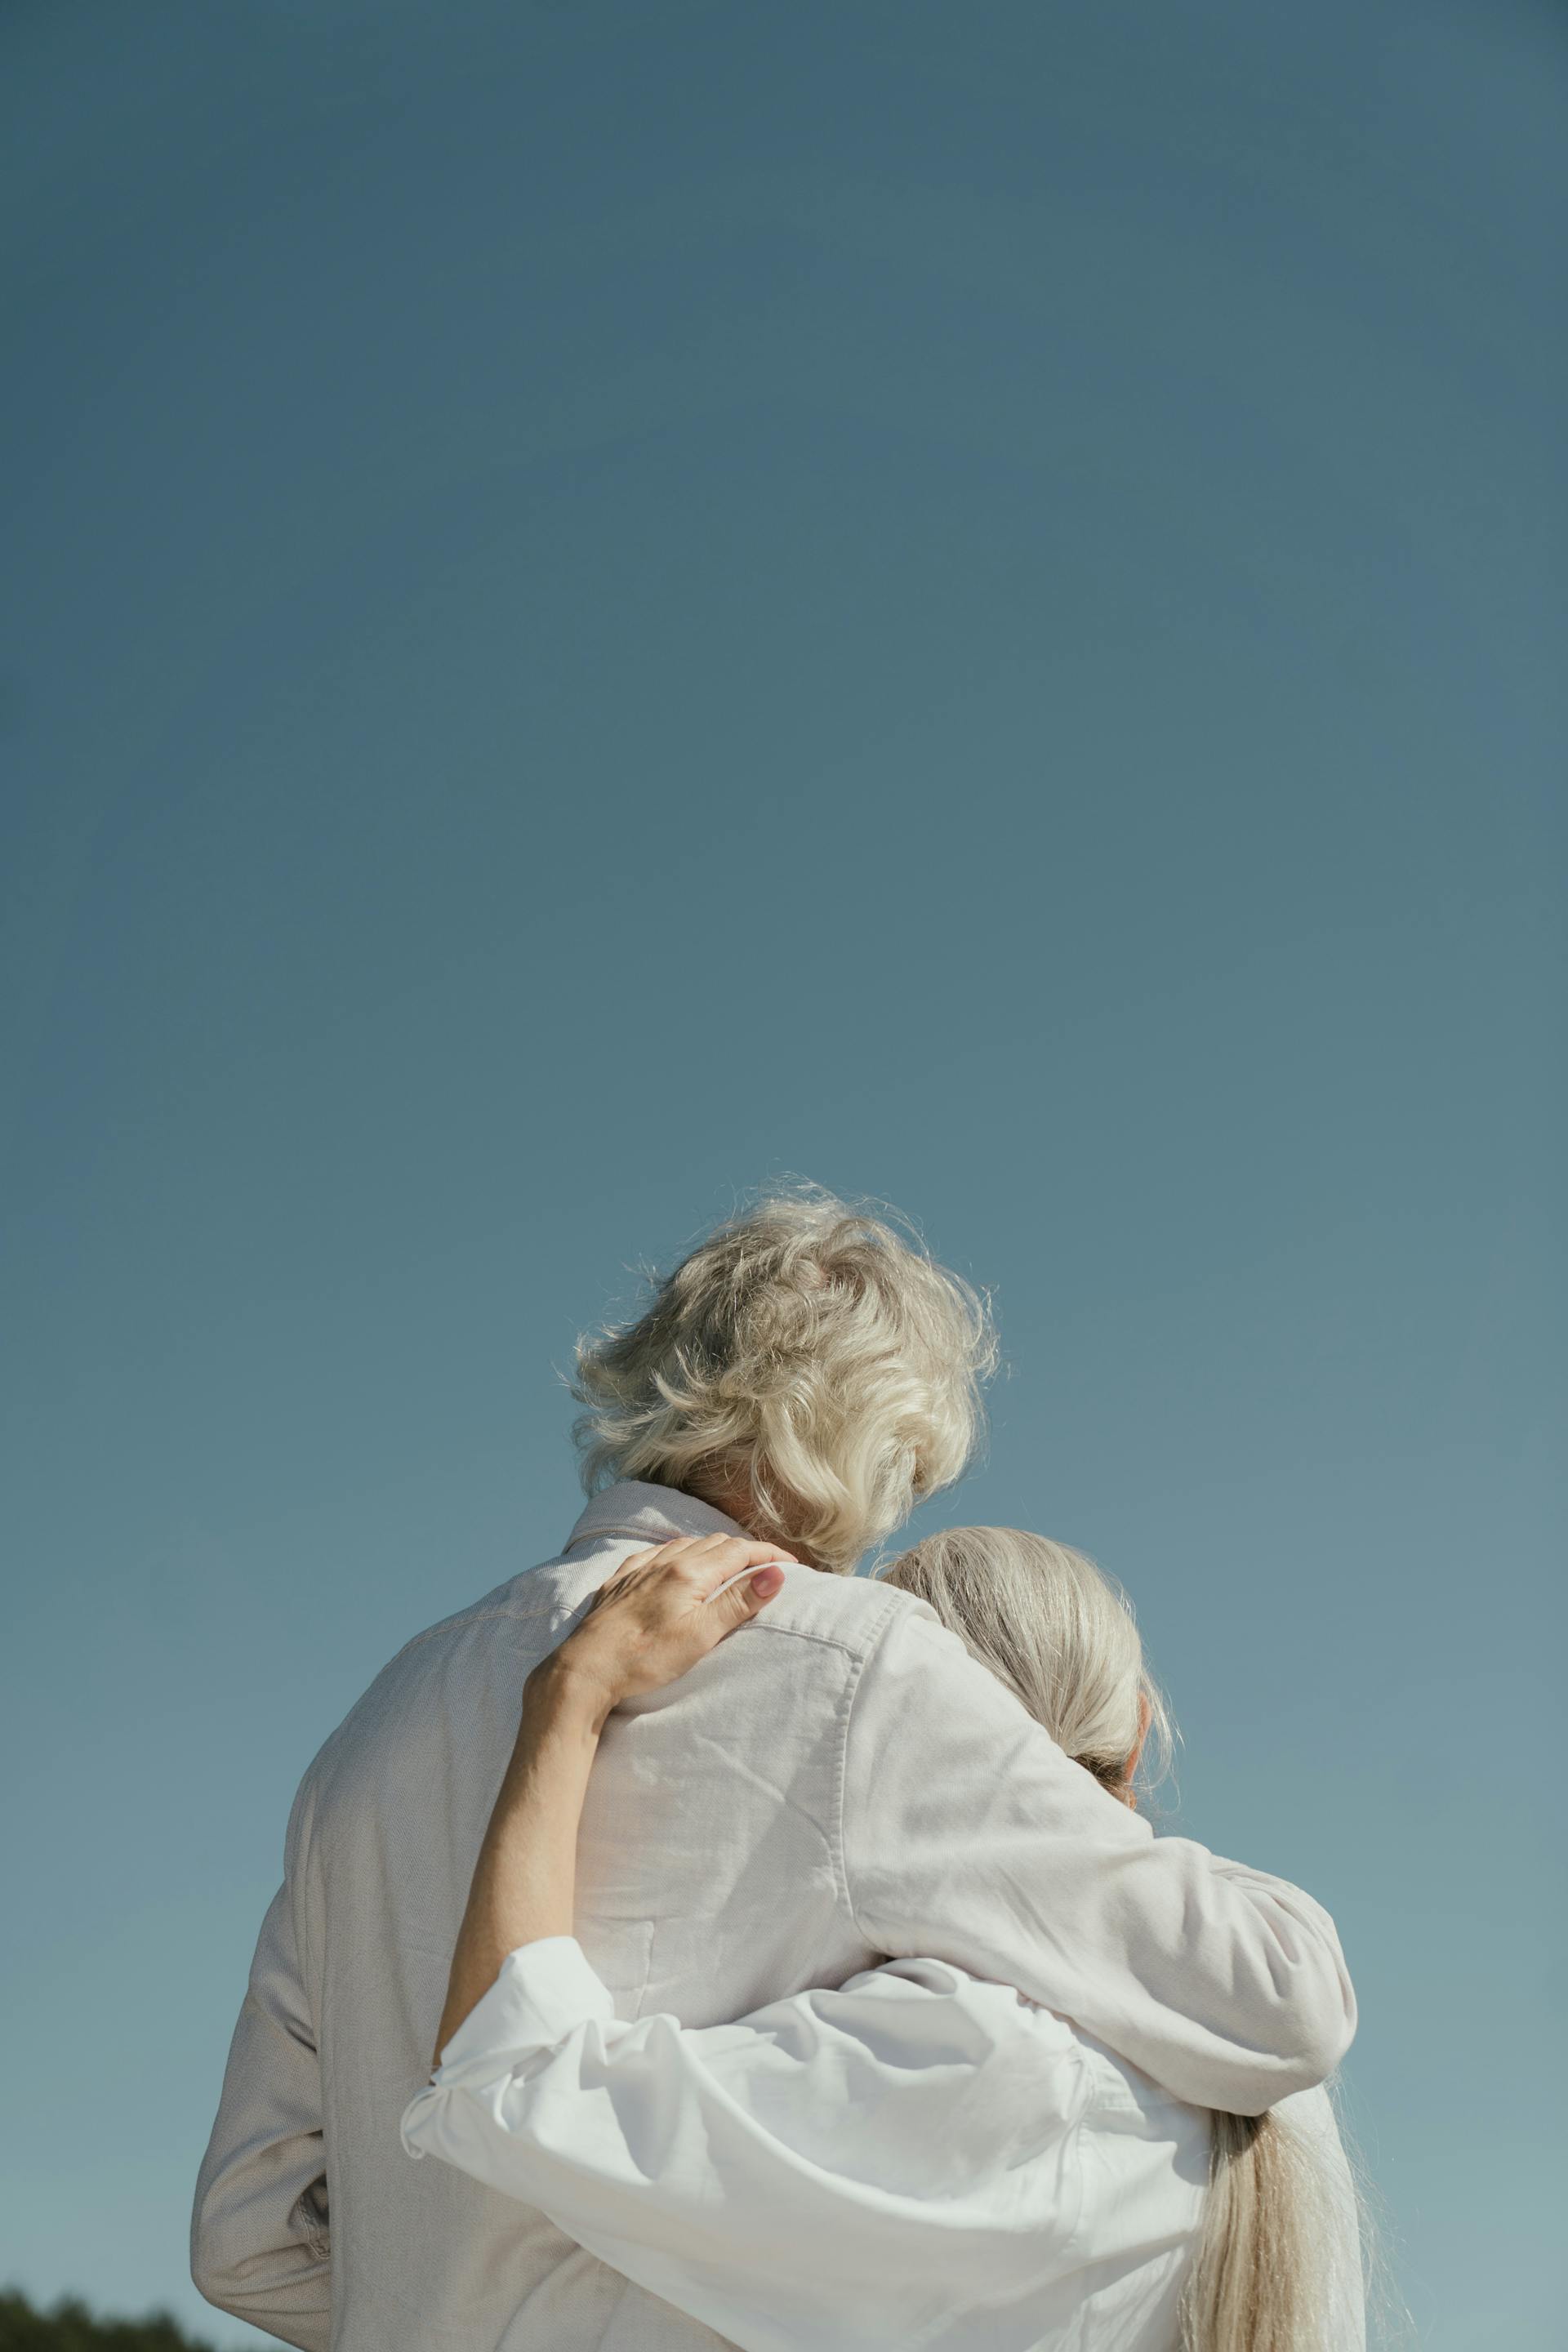 Ein älteres Paar, das sich umarmt | Quelle: Pexels